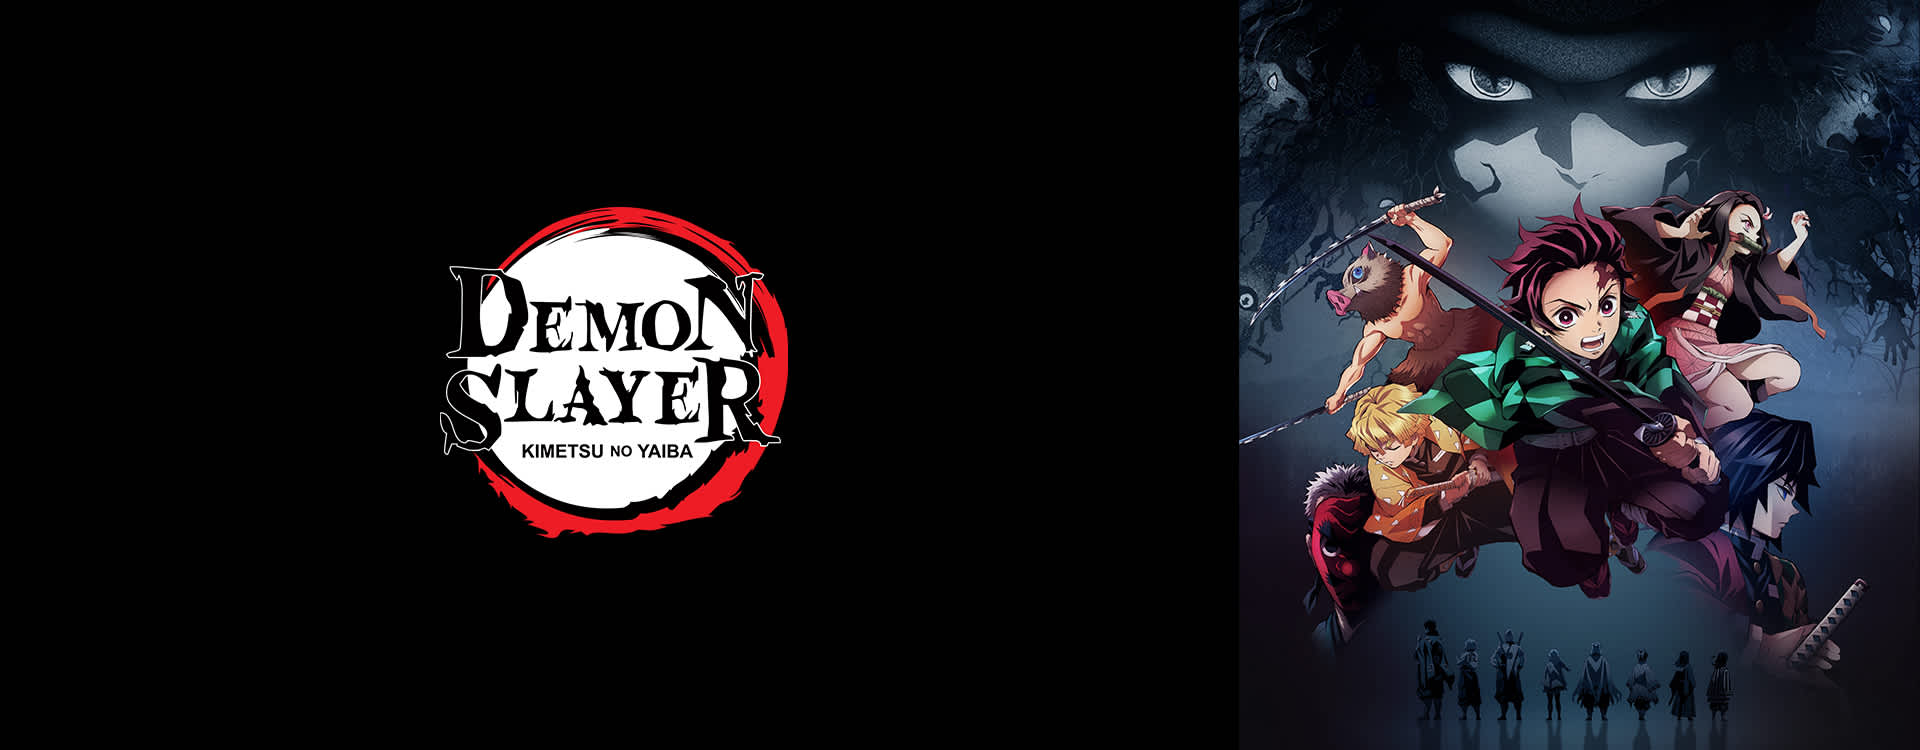 Dub PT) Demon Slayer: Kimetsu no Yaiba O oni da temari e o oni da flecha -  Assista na Crunchyroll